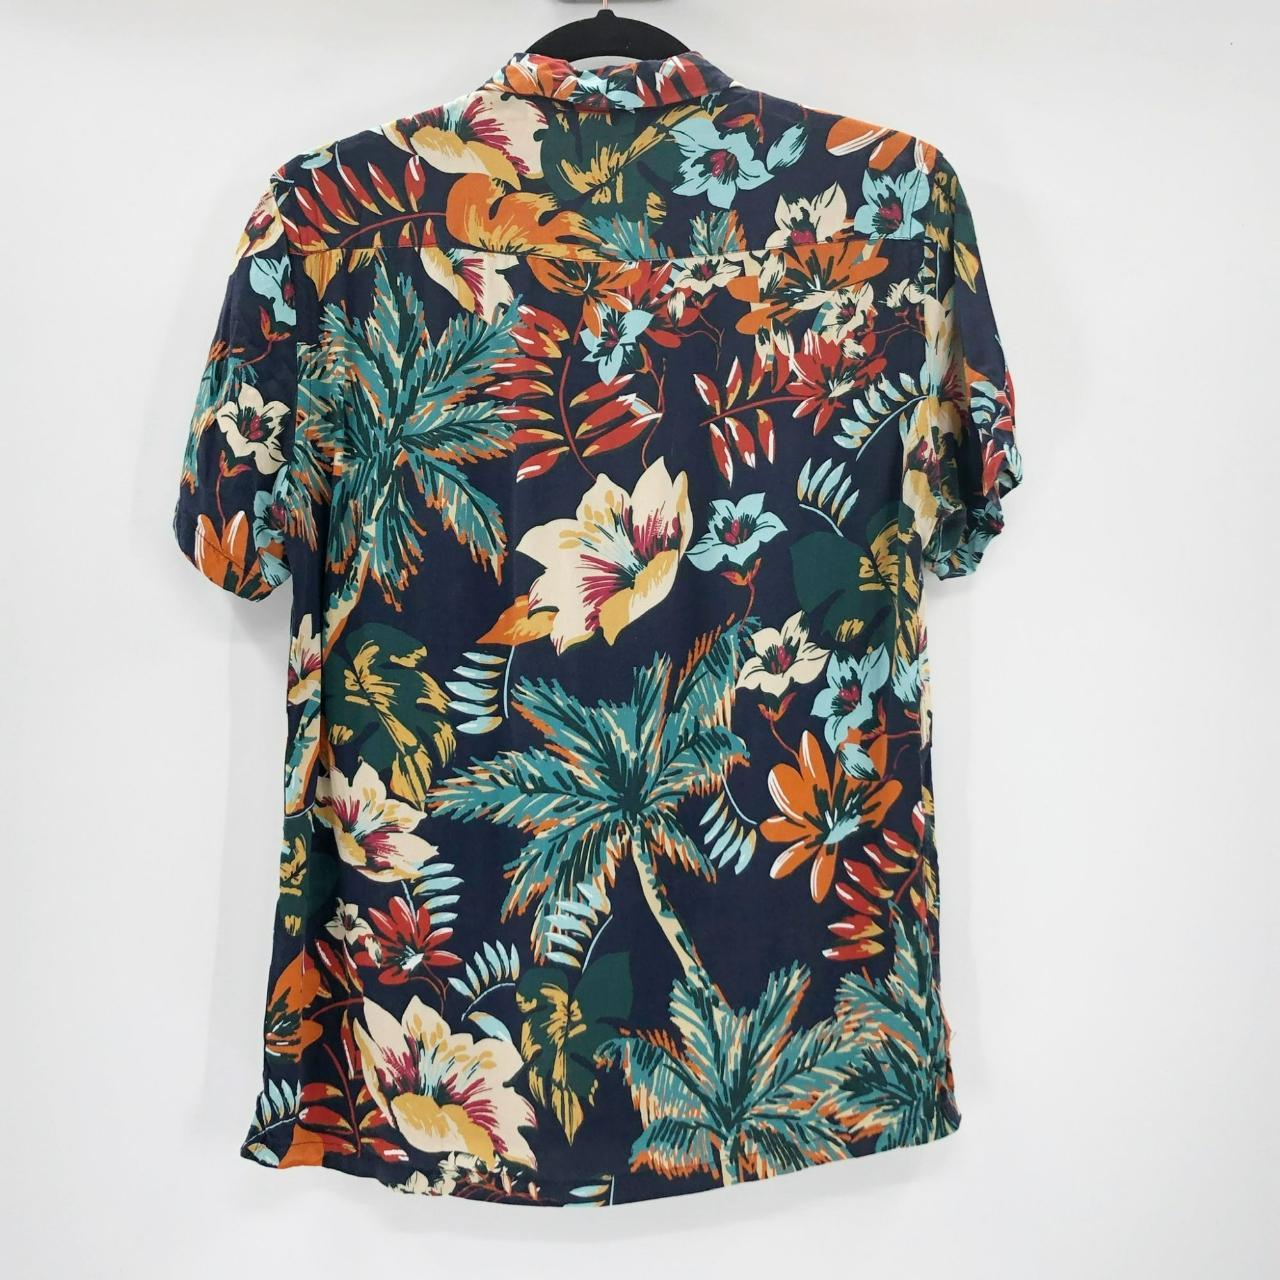 Zara Men's Black Floral Hawaiian Shirt Button Down... - Depop